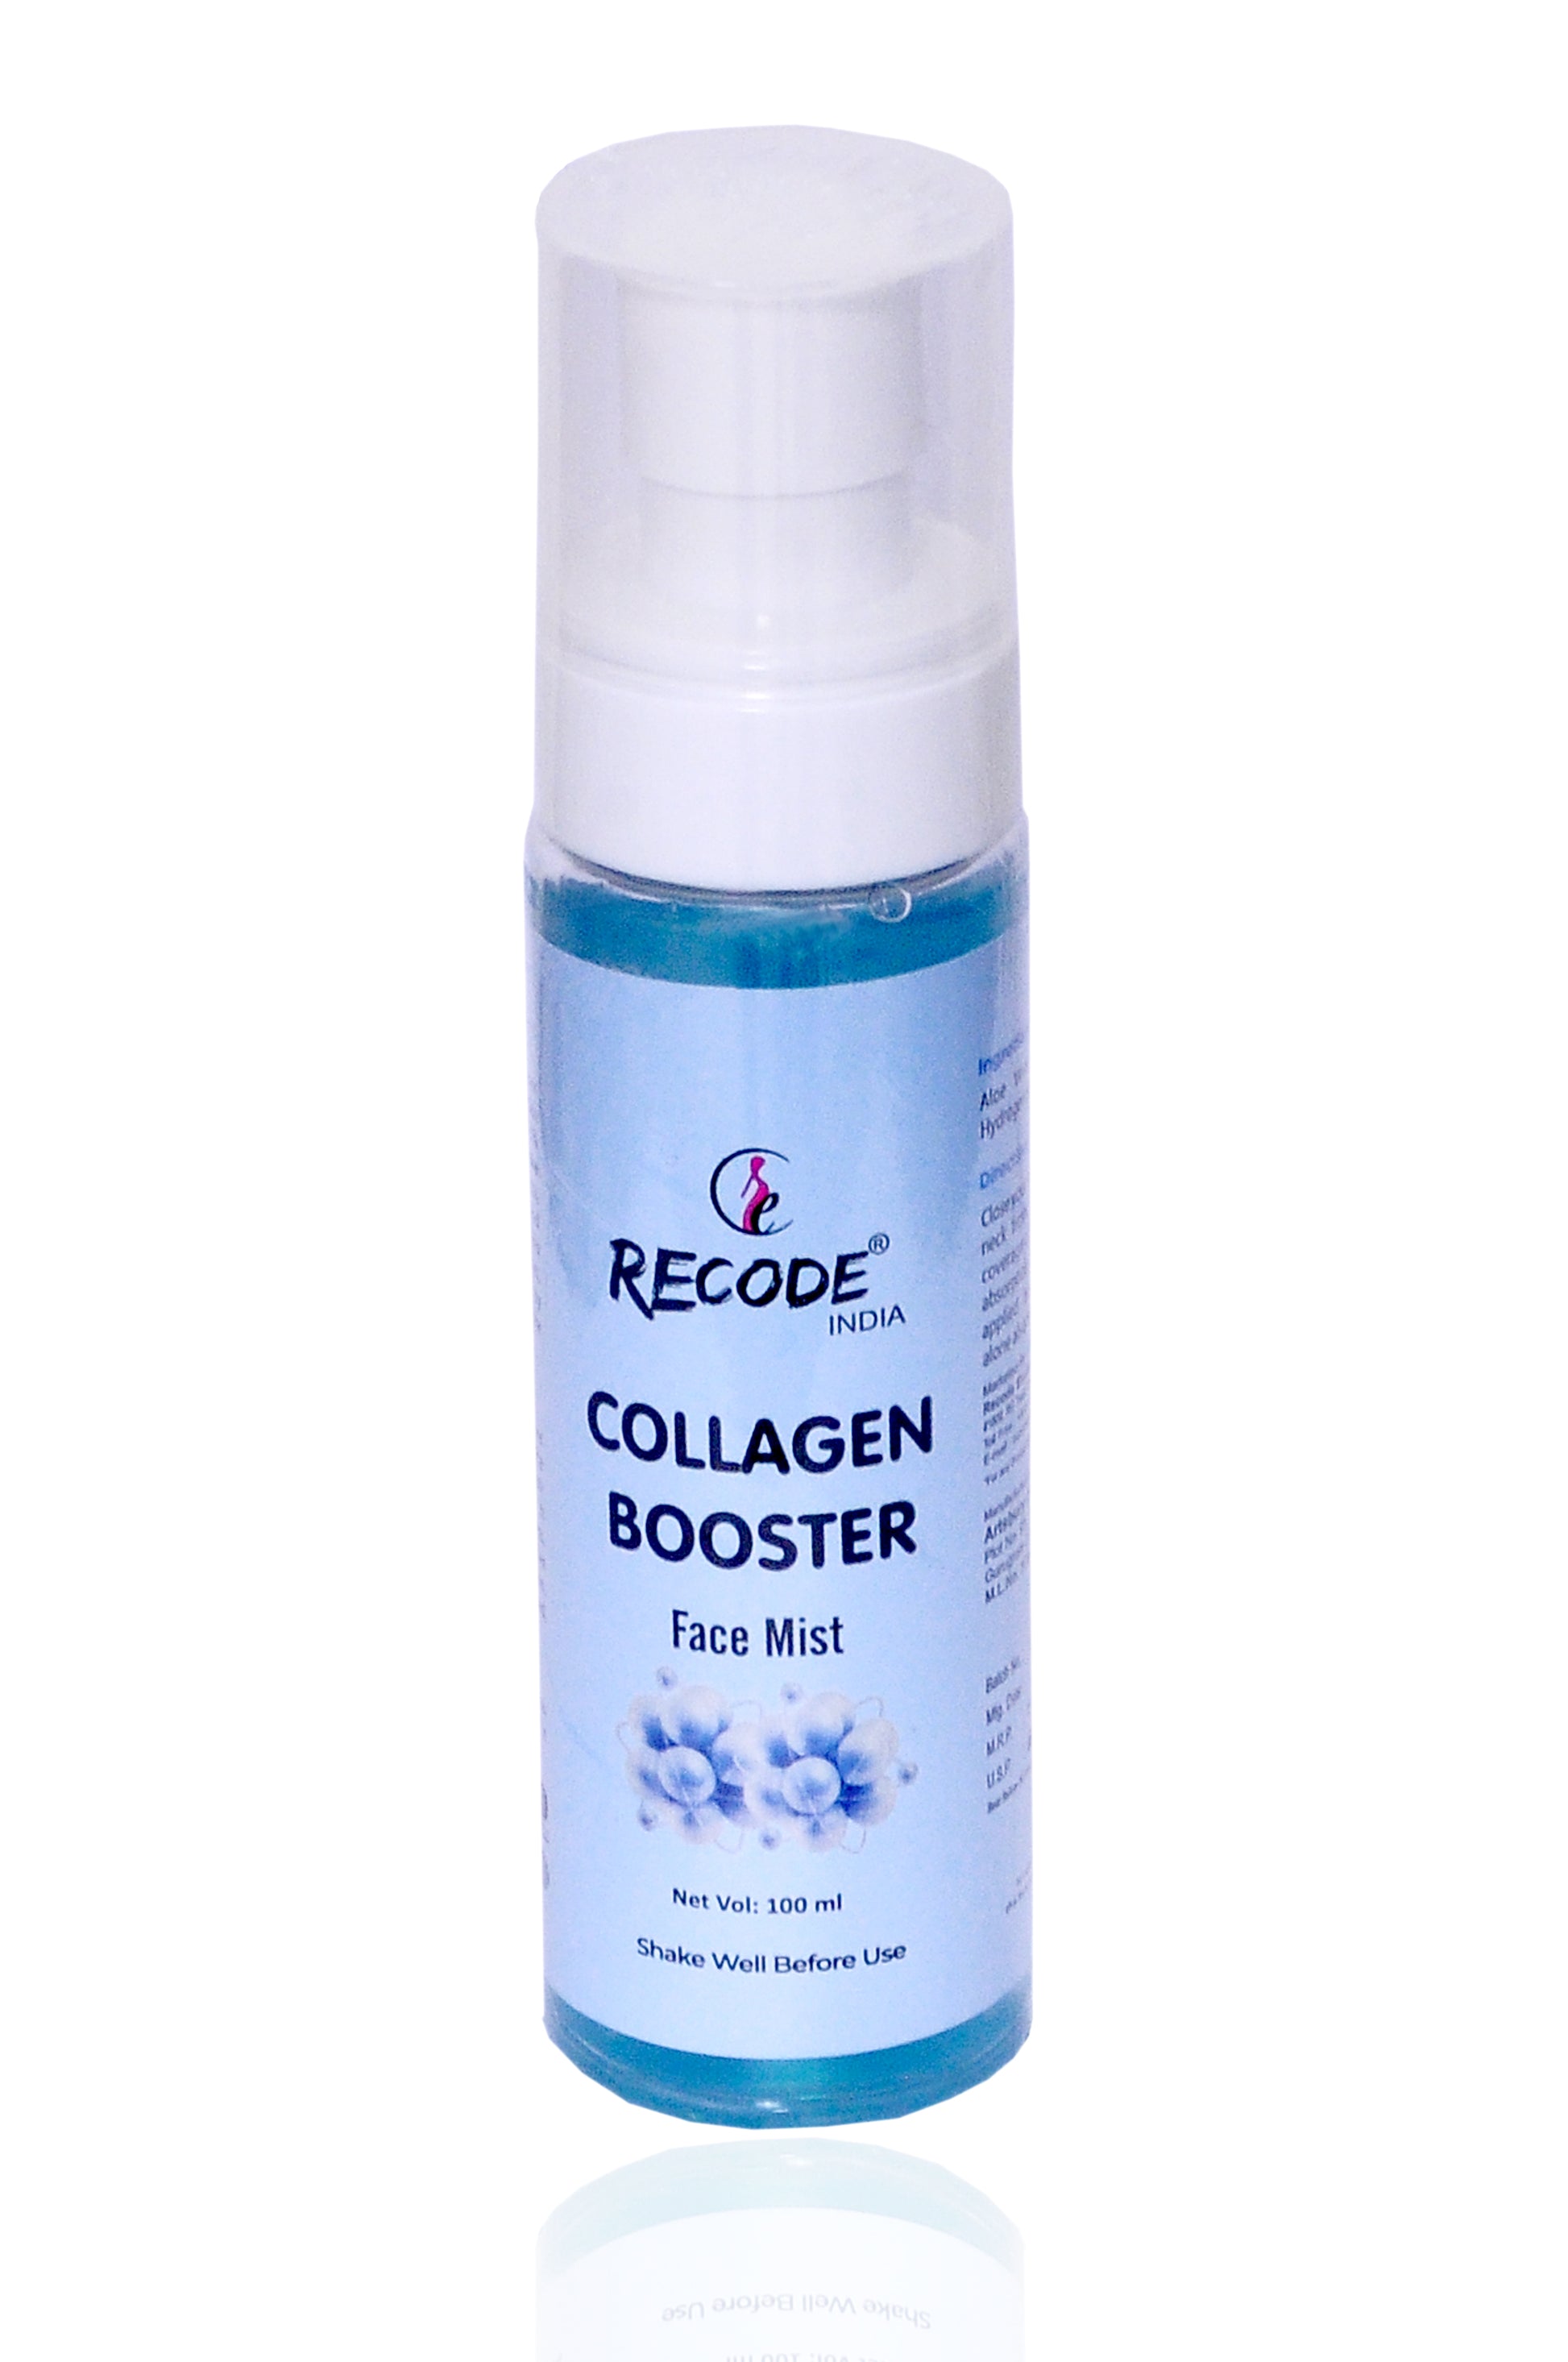 Collagen Booster Face Mist Toner for Wrinkles - 100 ml